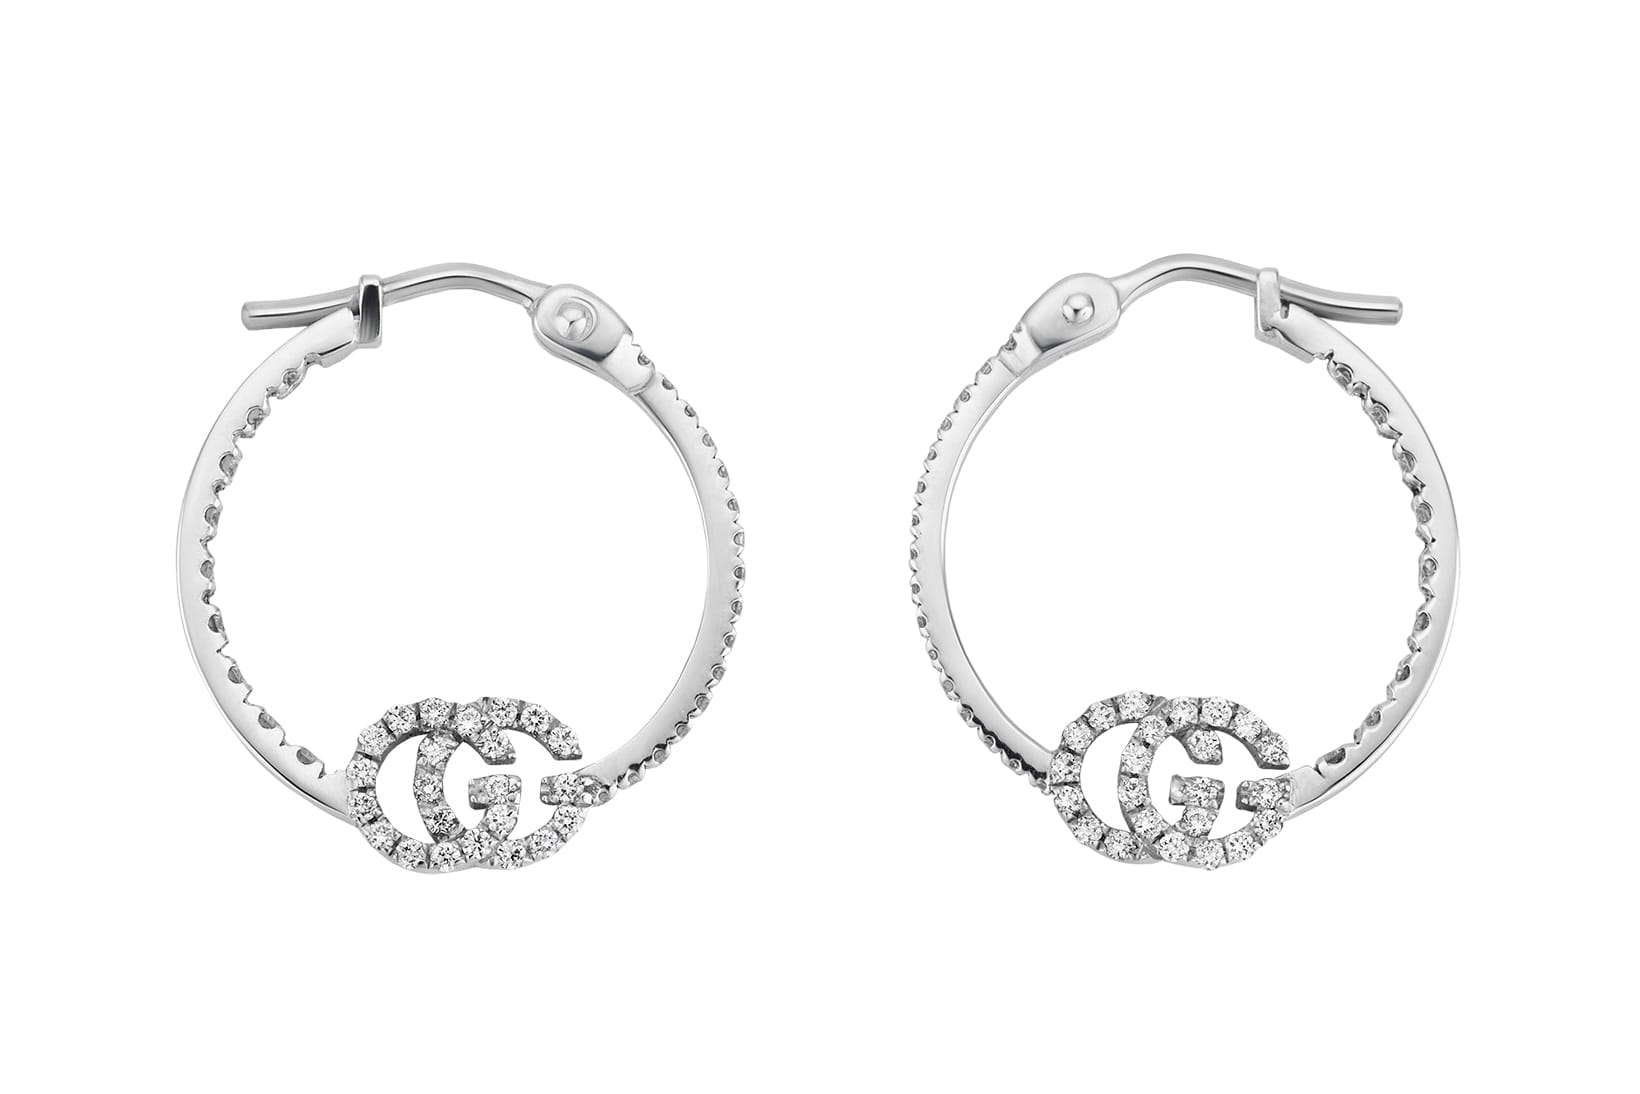 gucci hoop earrings silver